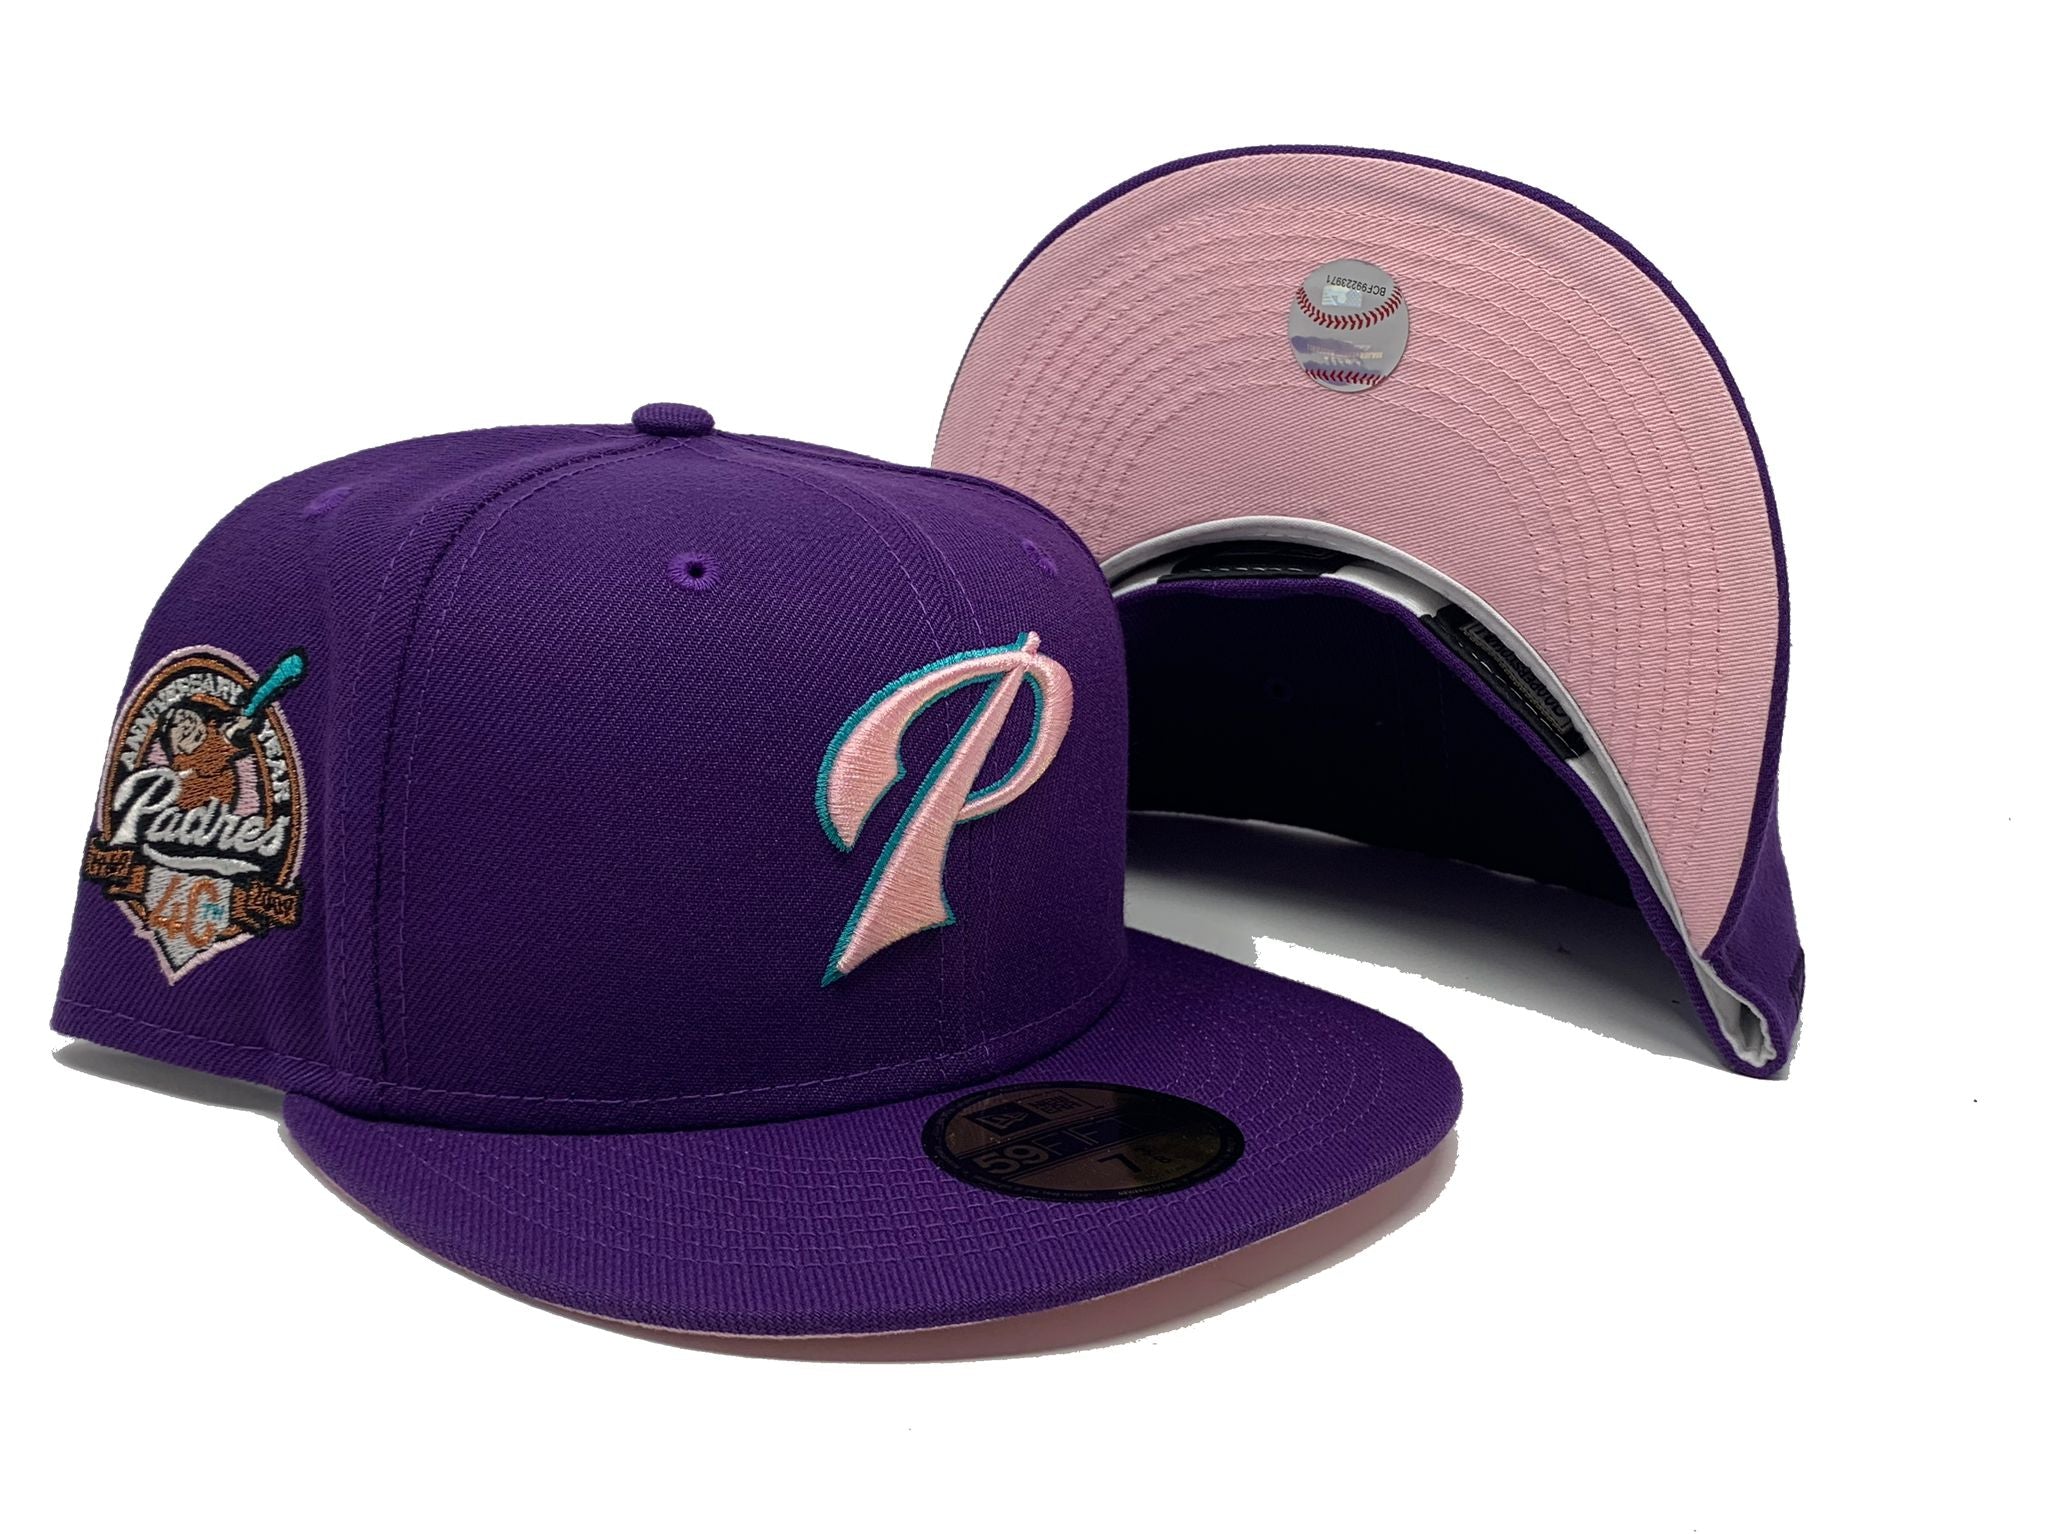 San Diego Padres hat  San diego padres hat, Hats, Clothes design